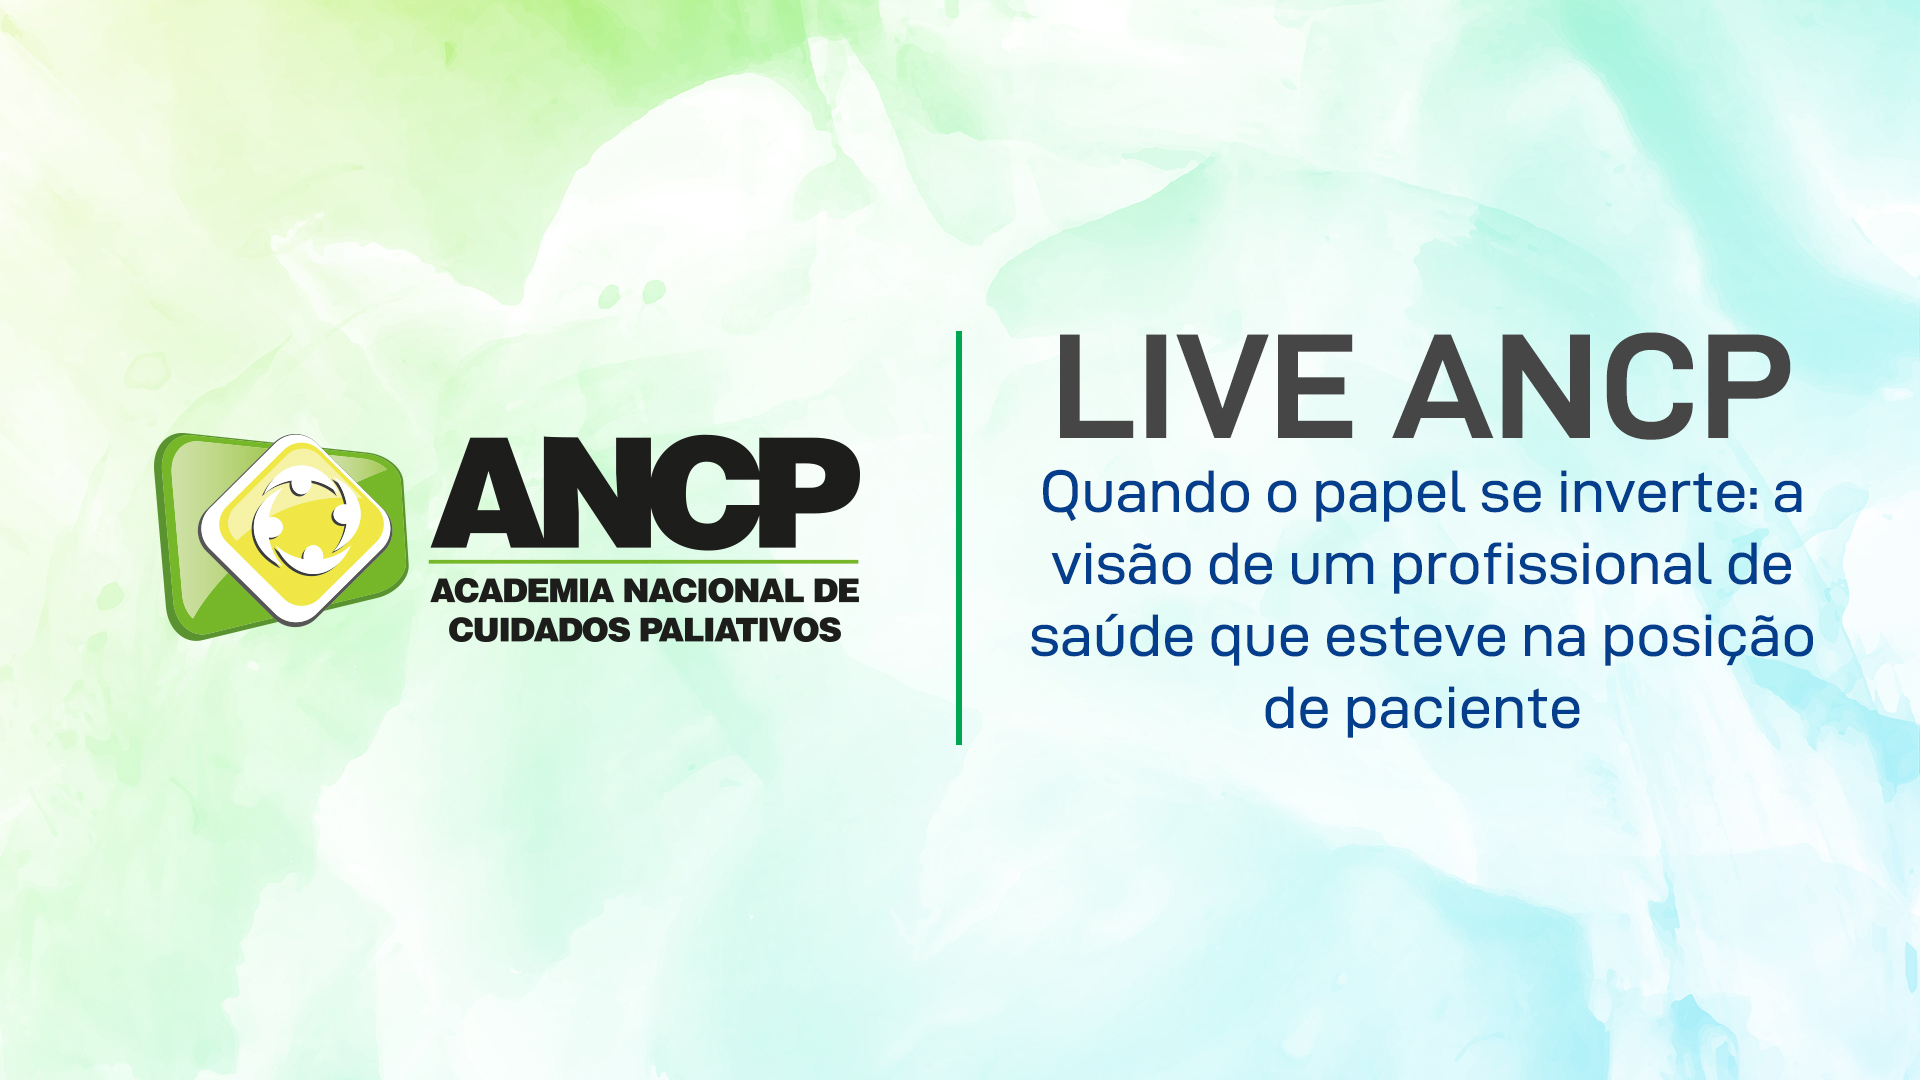 ANCP realizou a live “Quando o papel se inverte: a visão de um profissional de saúde que esteve na posição de paciente”